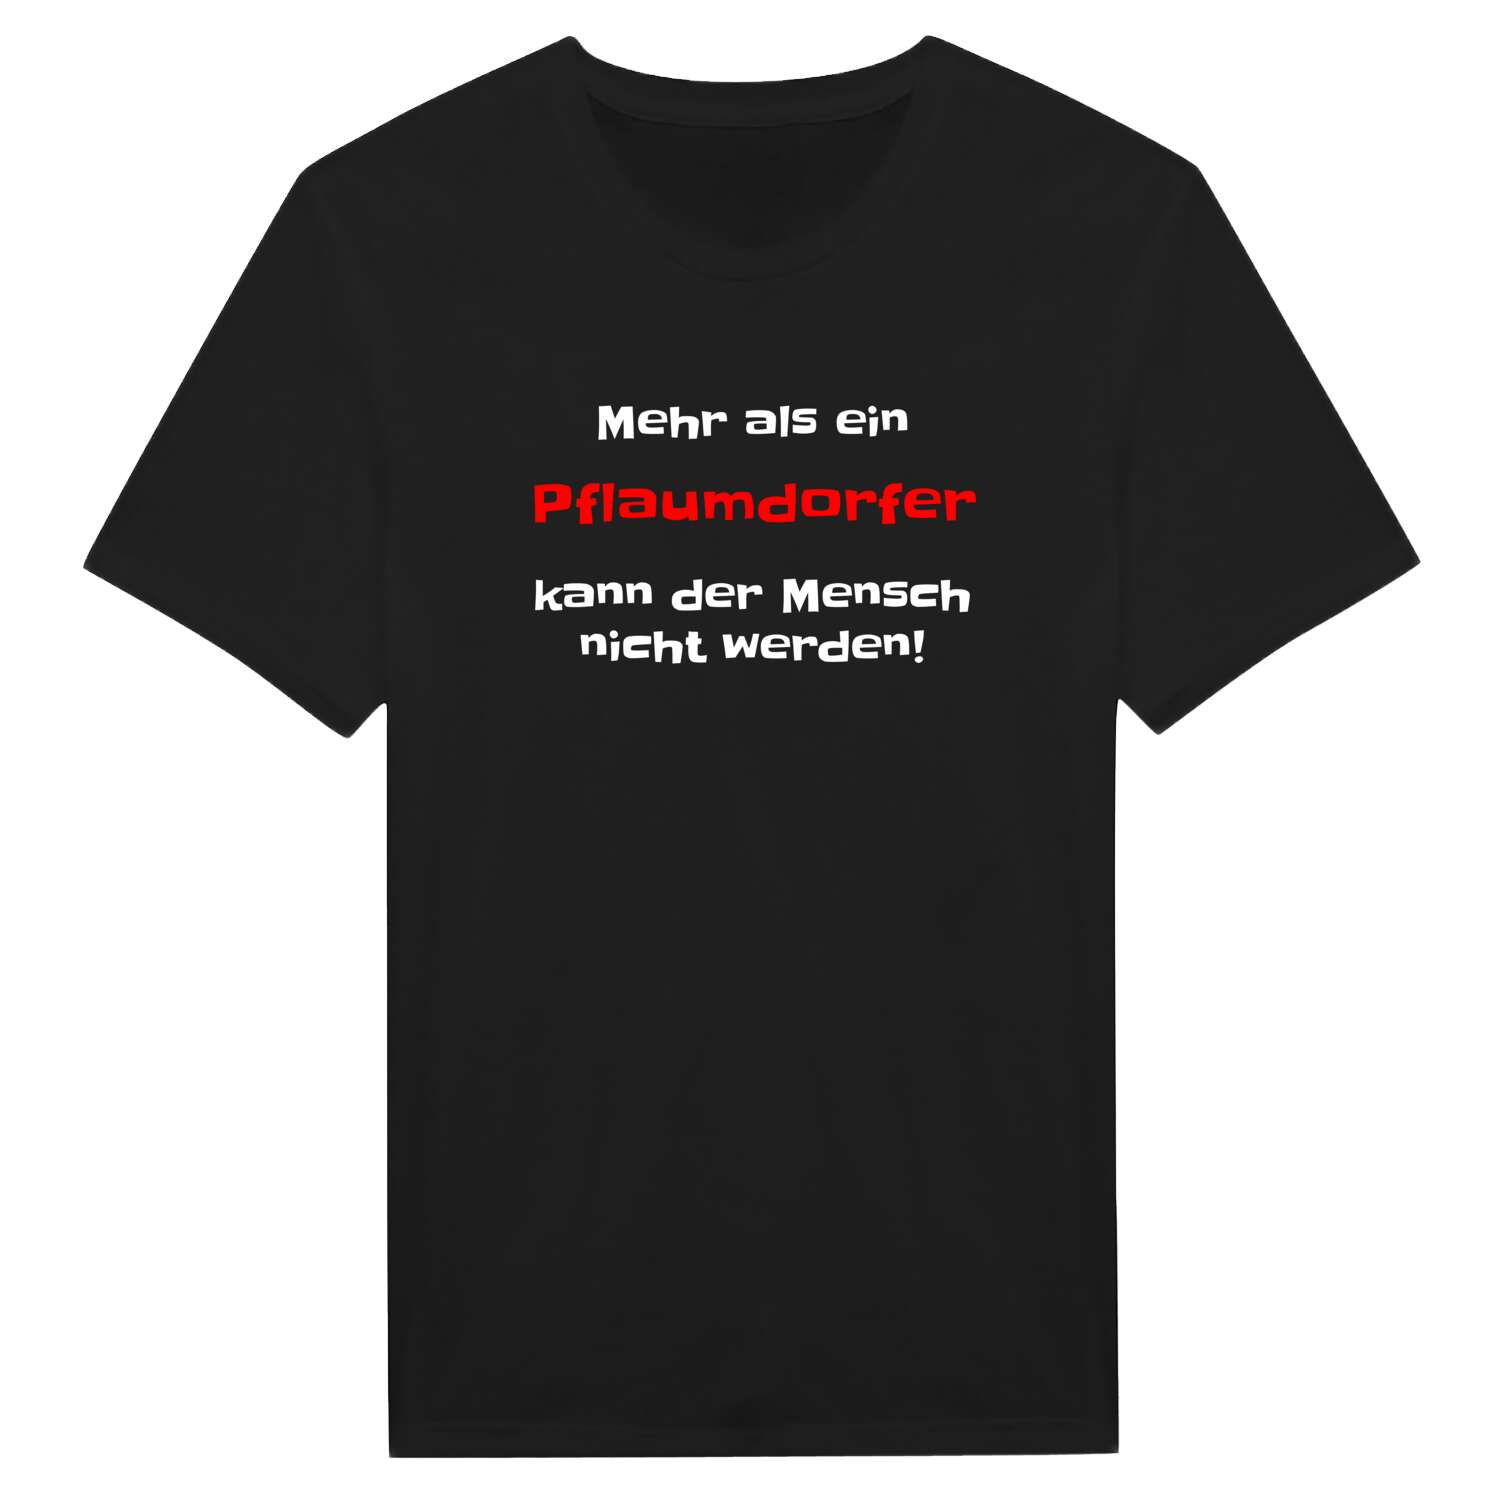 Pflaumdorf T-Shirt »Mehr als ein«